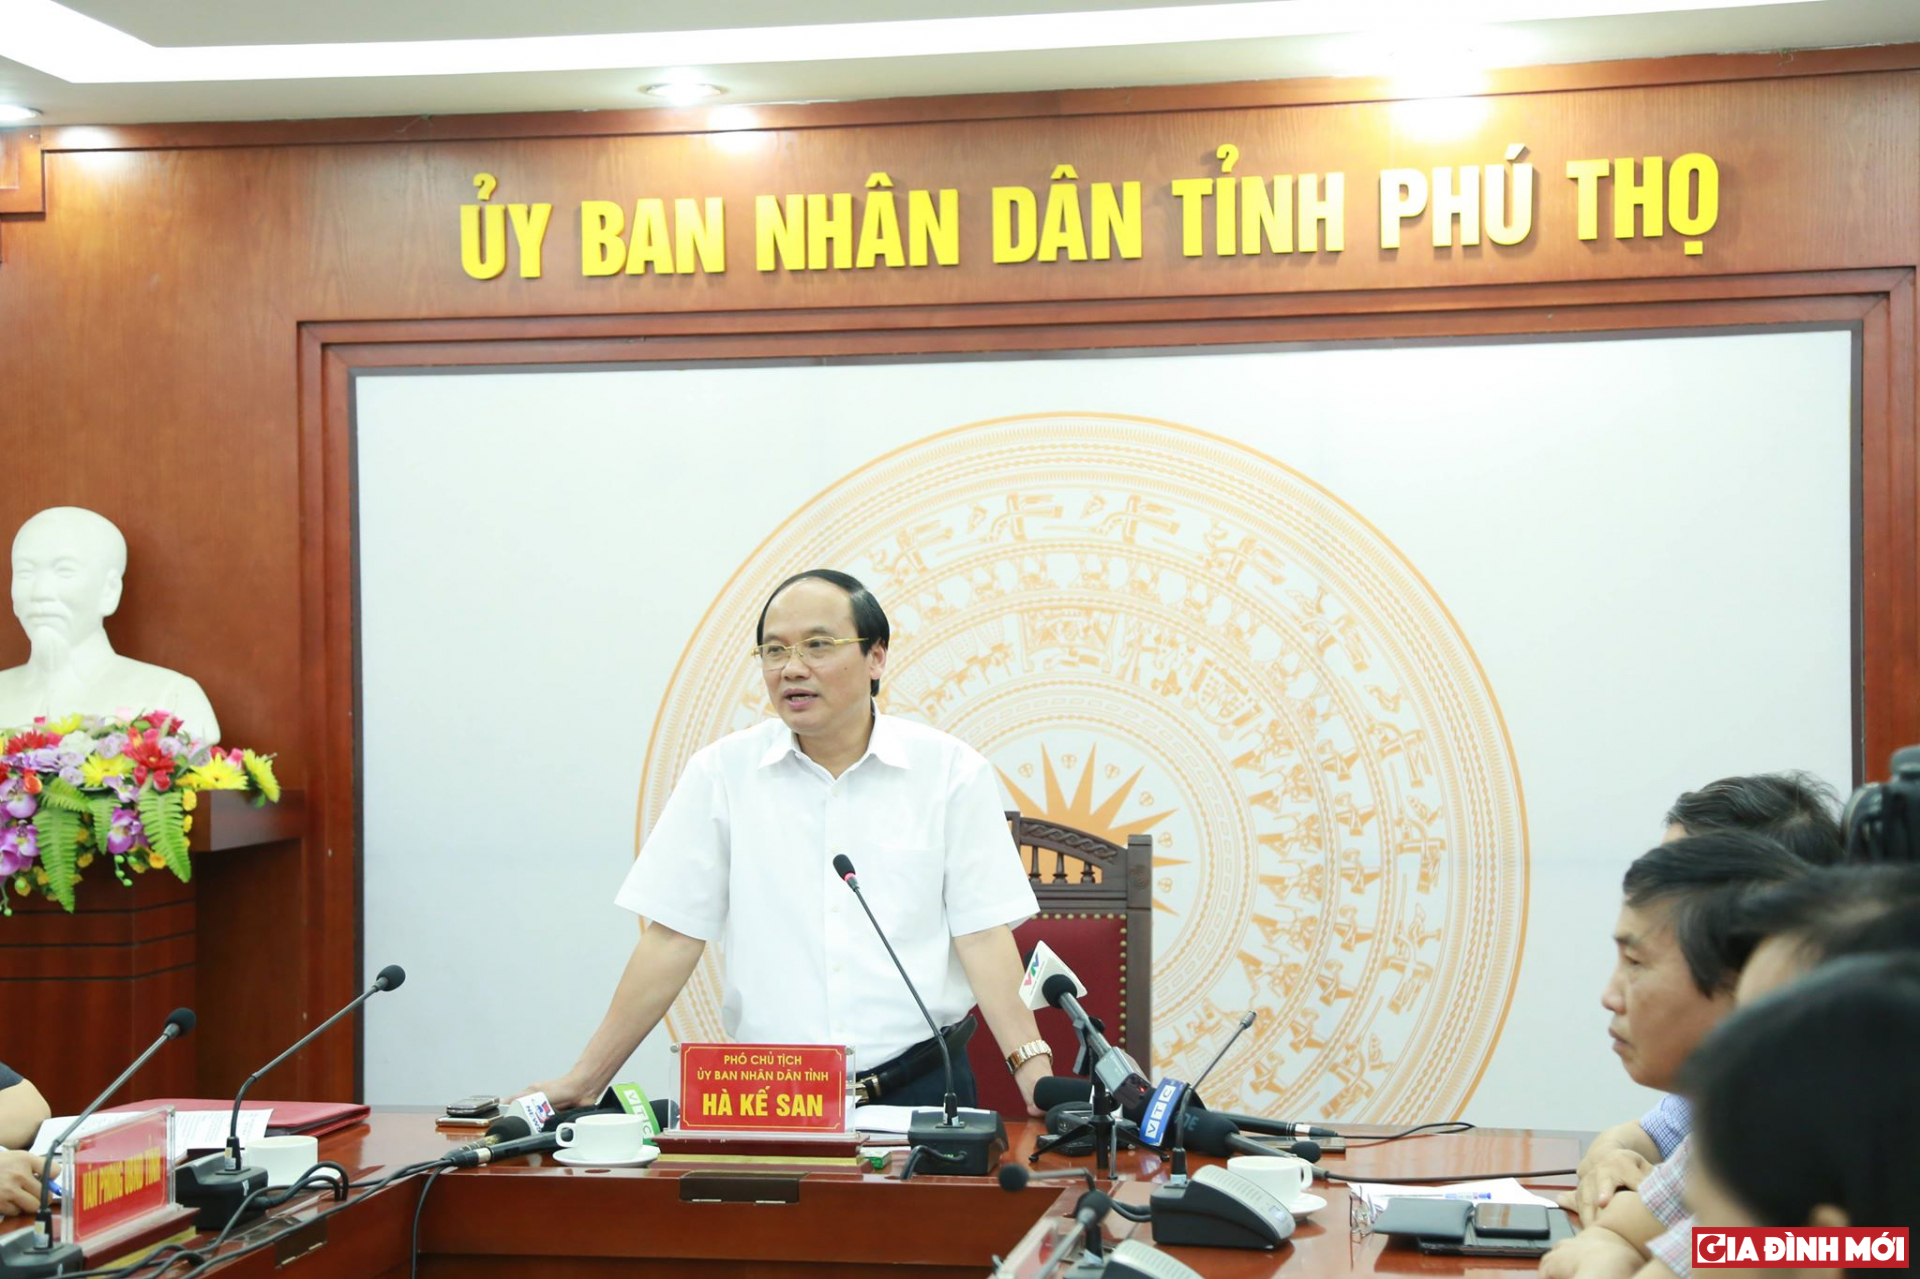 Ông Hà Kế San - Phó Chủ tịch UBND Phú Thọ